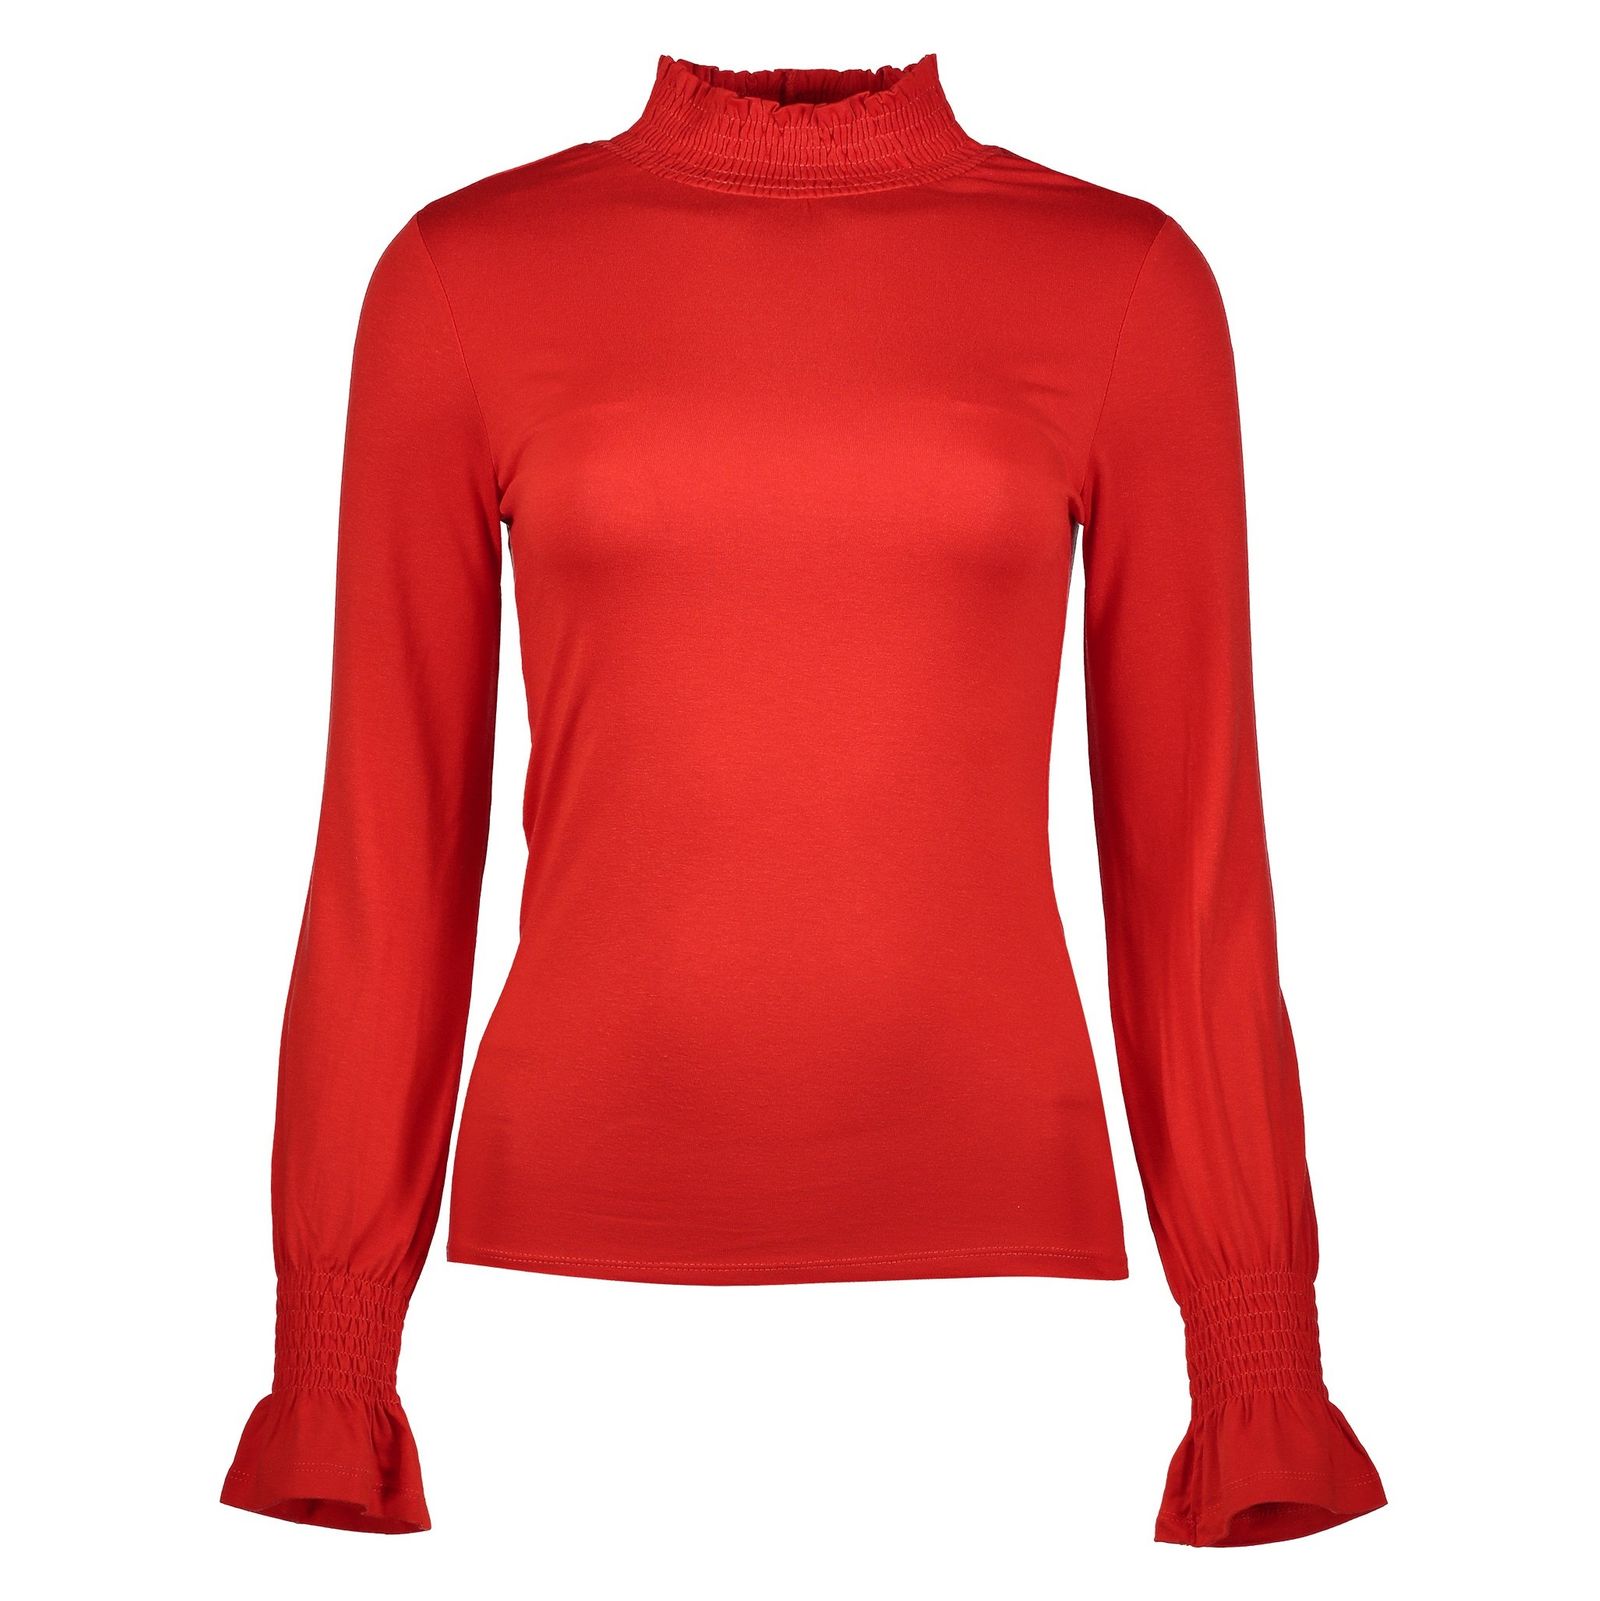 تی شرت ویسکوز یقه اسکی زنانه - رد هرینگ - قرمز - 1